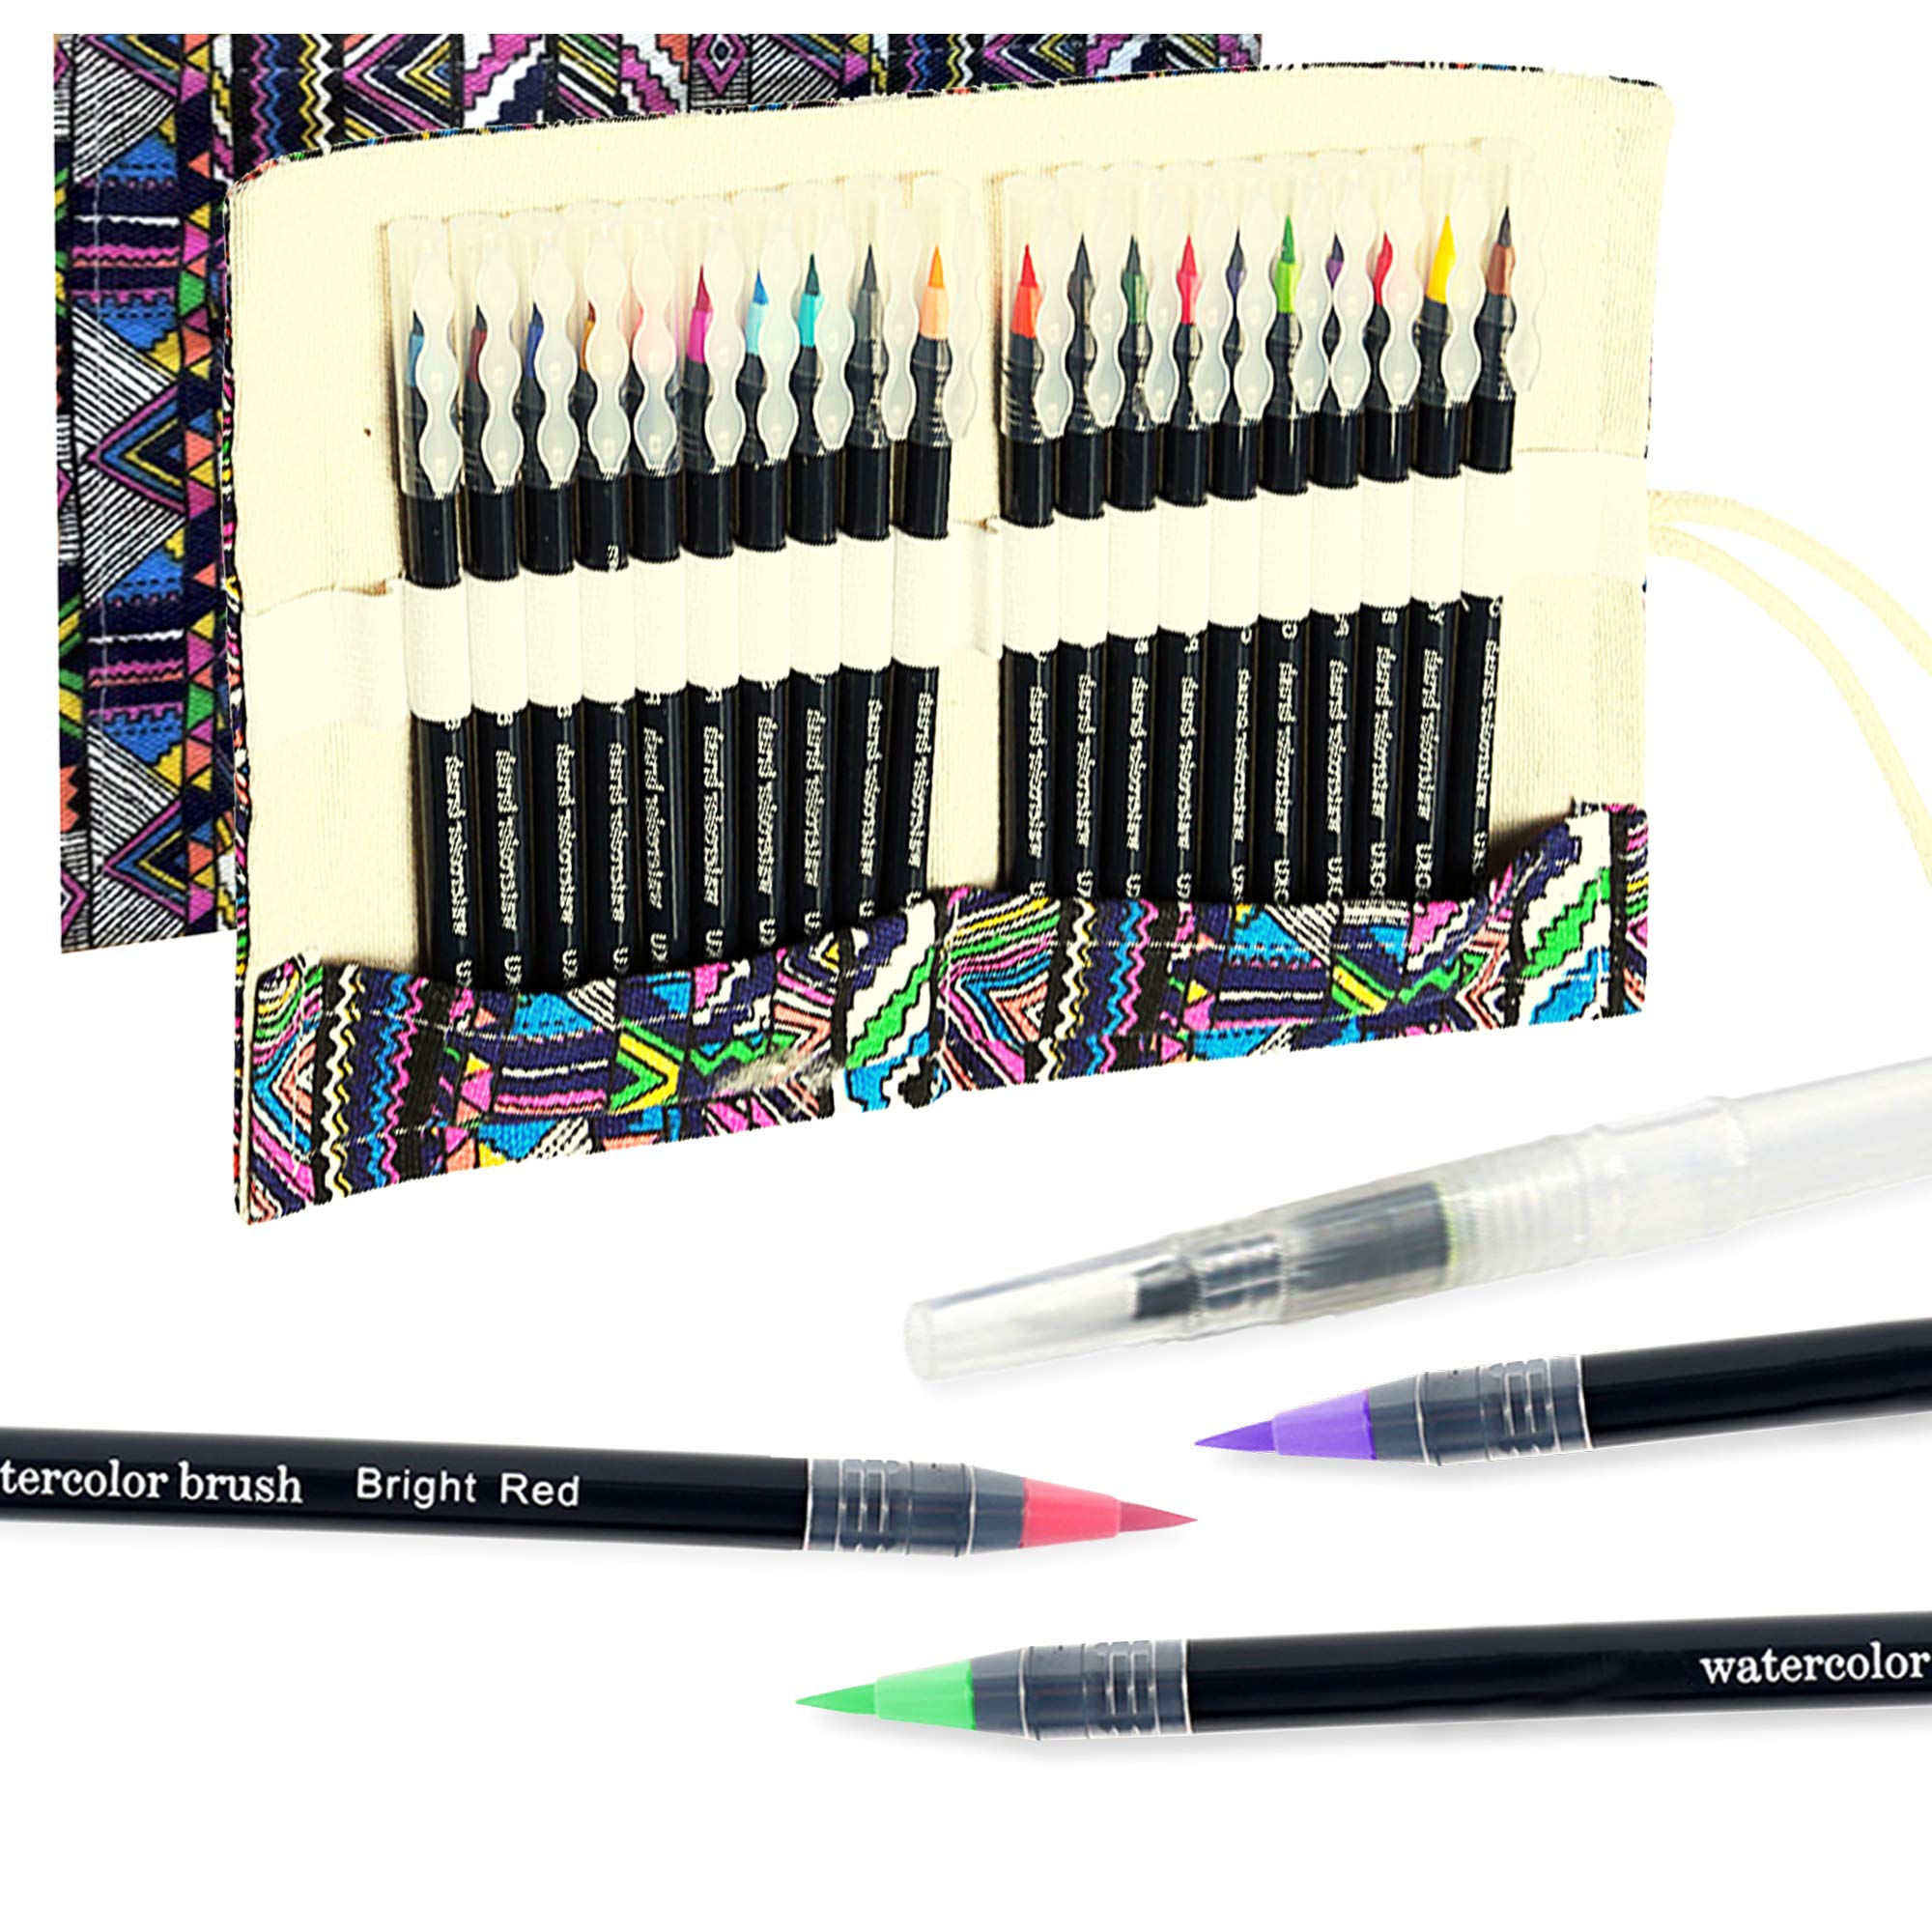 OOKU Professional Colored Pencils 120 Pc Studio Grade Artist Color Pencil  Set - Vibrant Rich Pigments